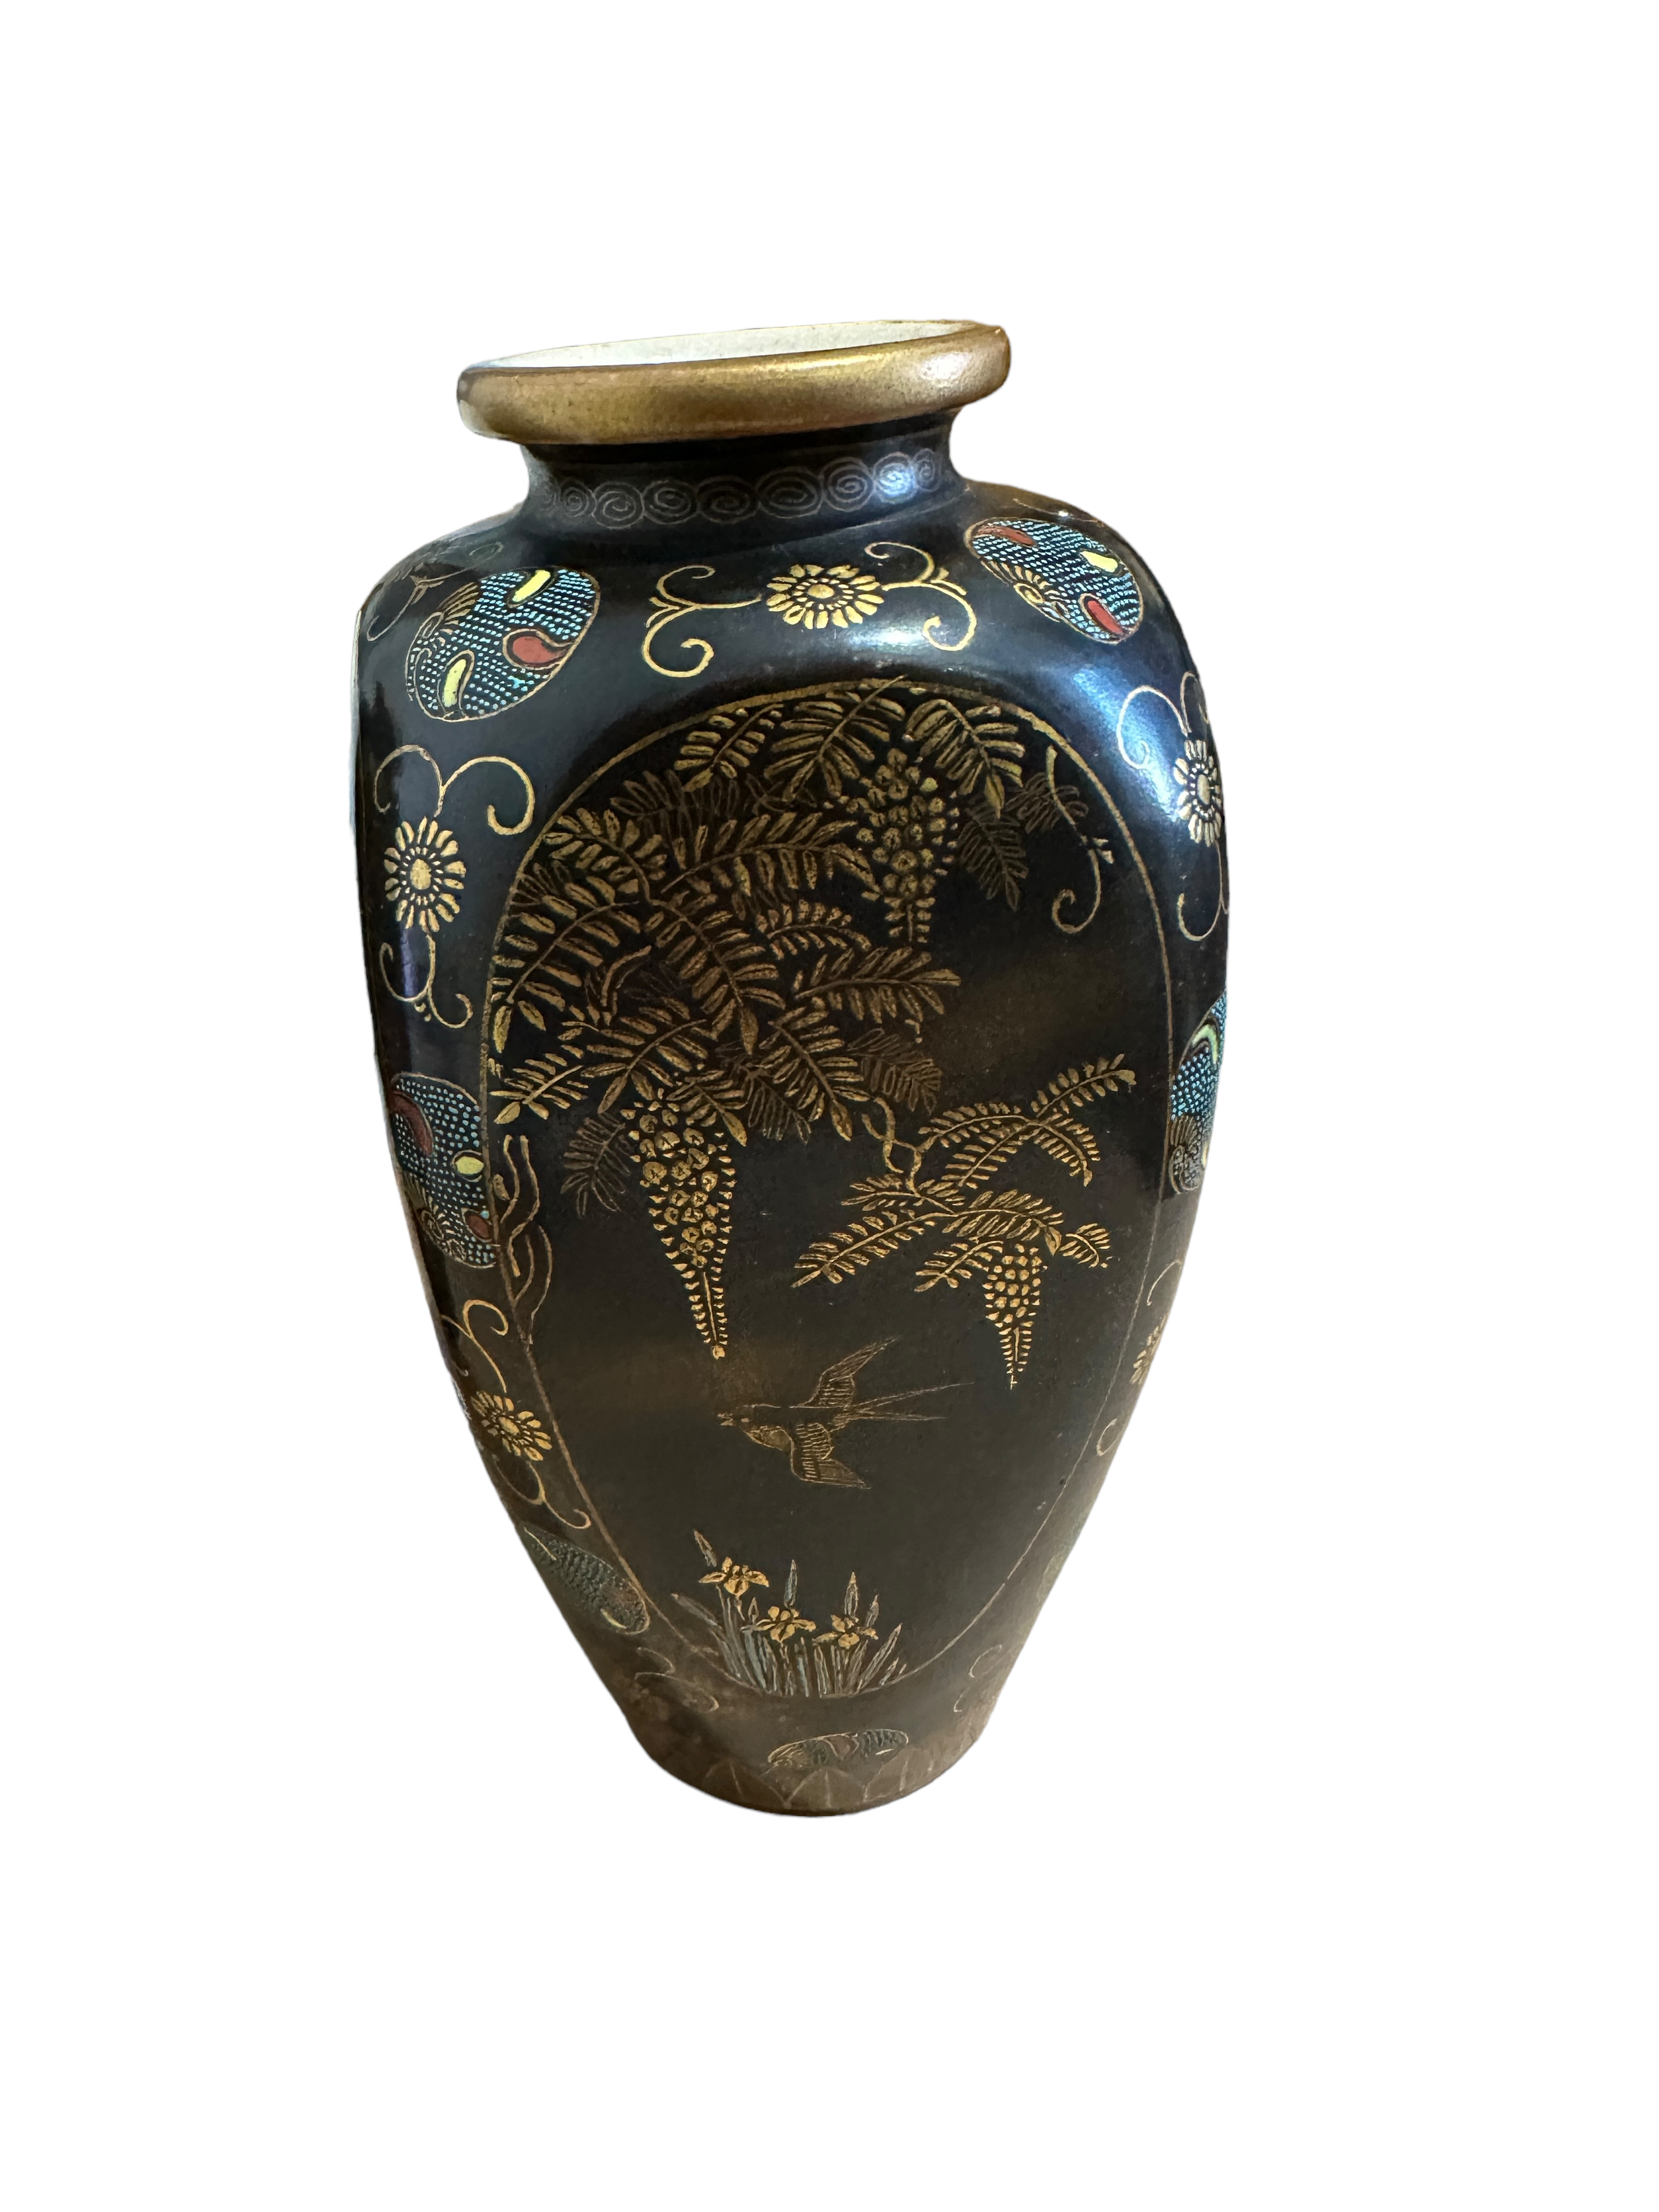 Pair of Antique Satsuma Vases - 22cm tall. - Image 3 of 7